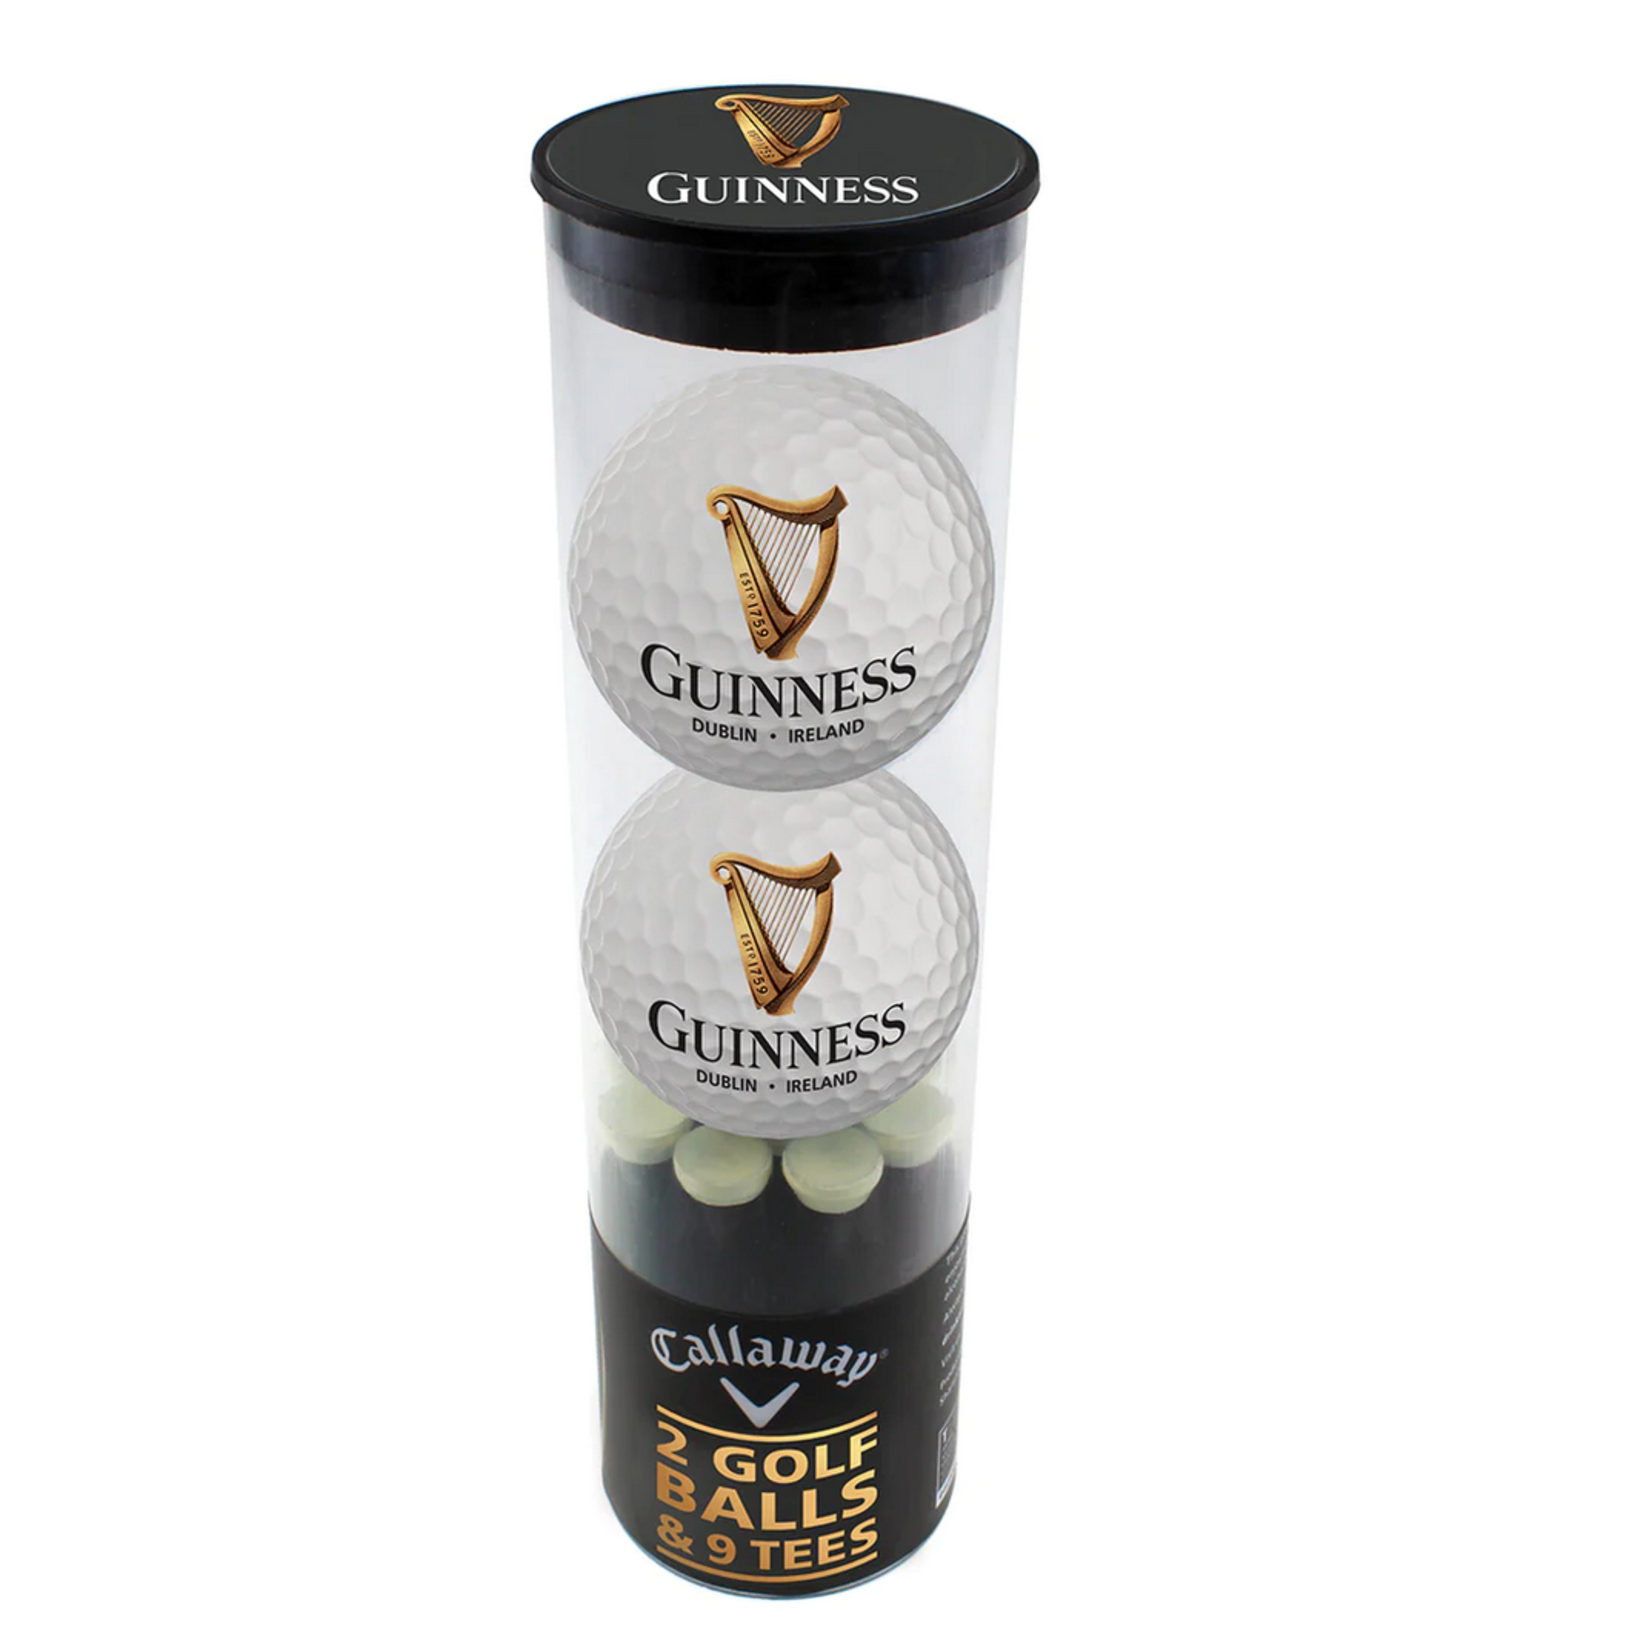 Guinness Guinness Golf Gift Set